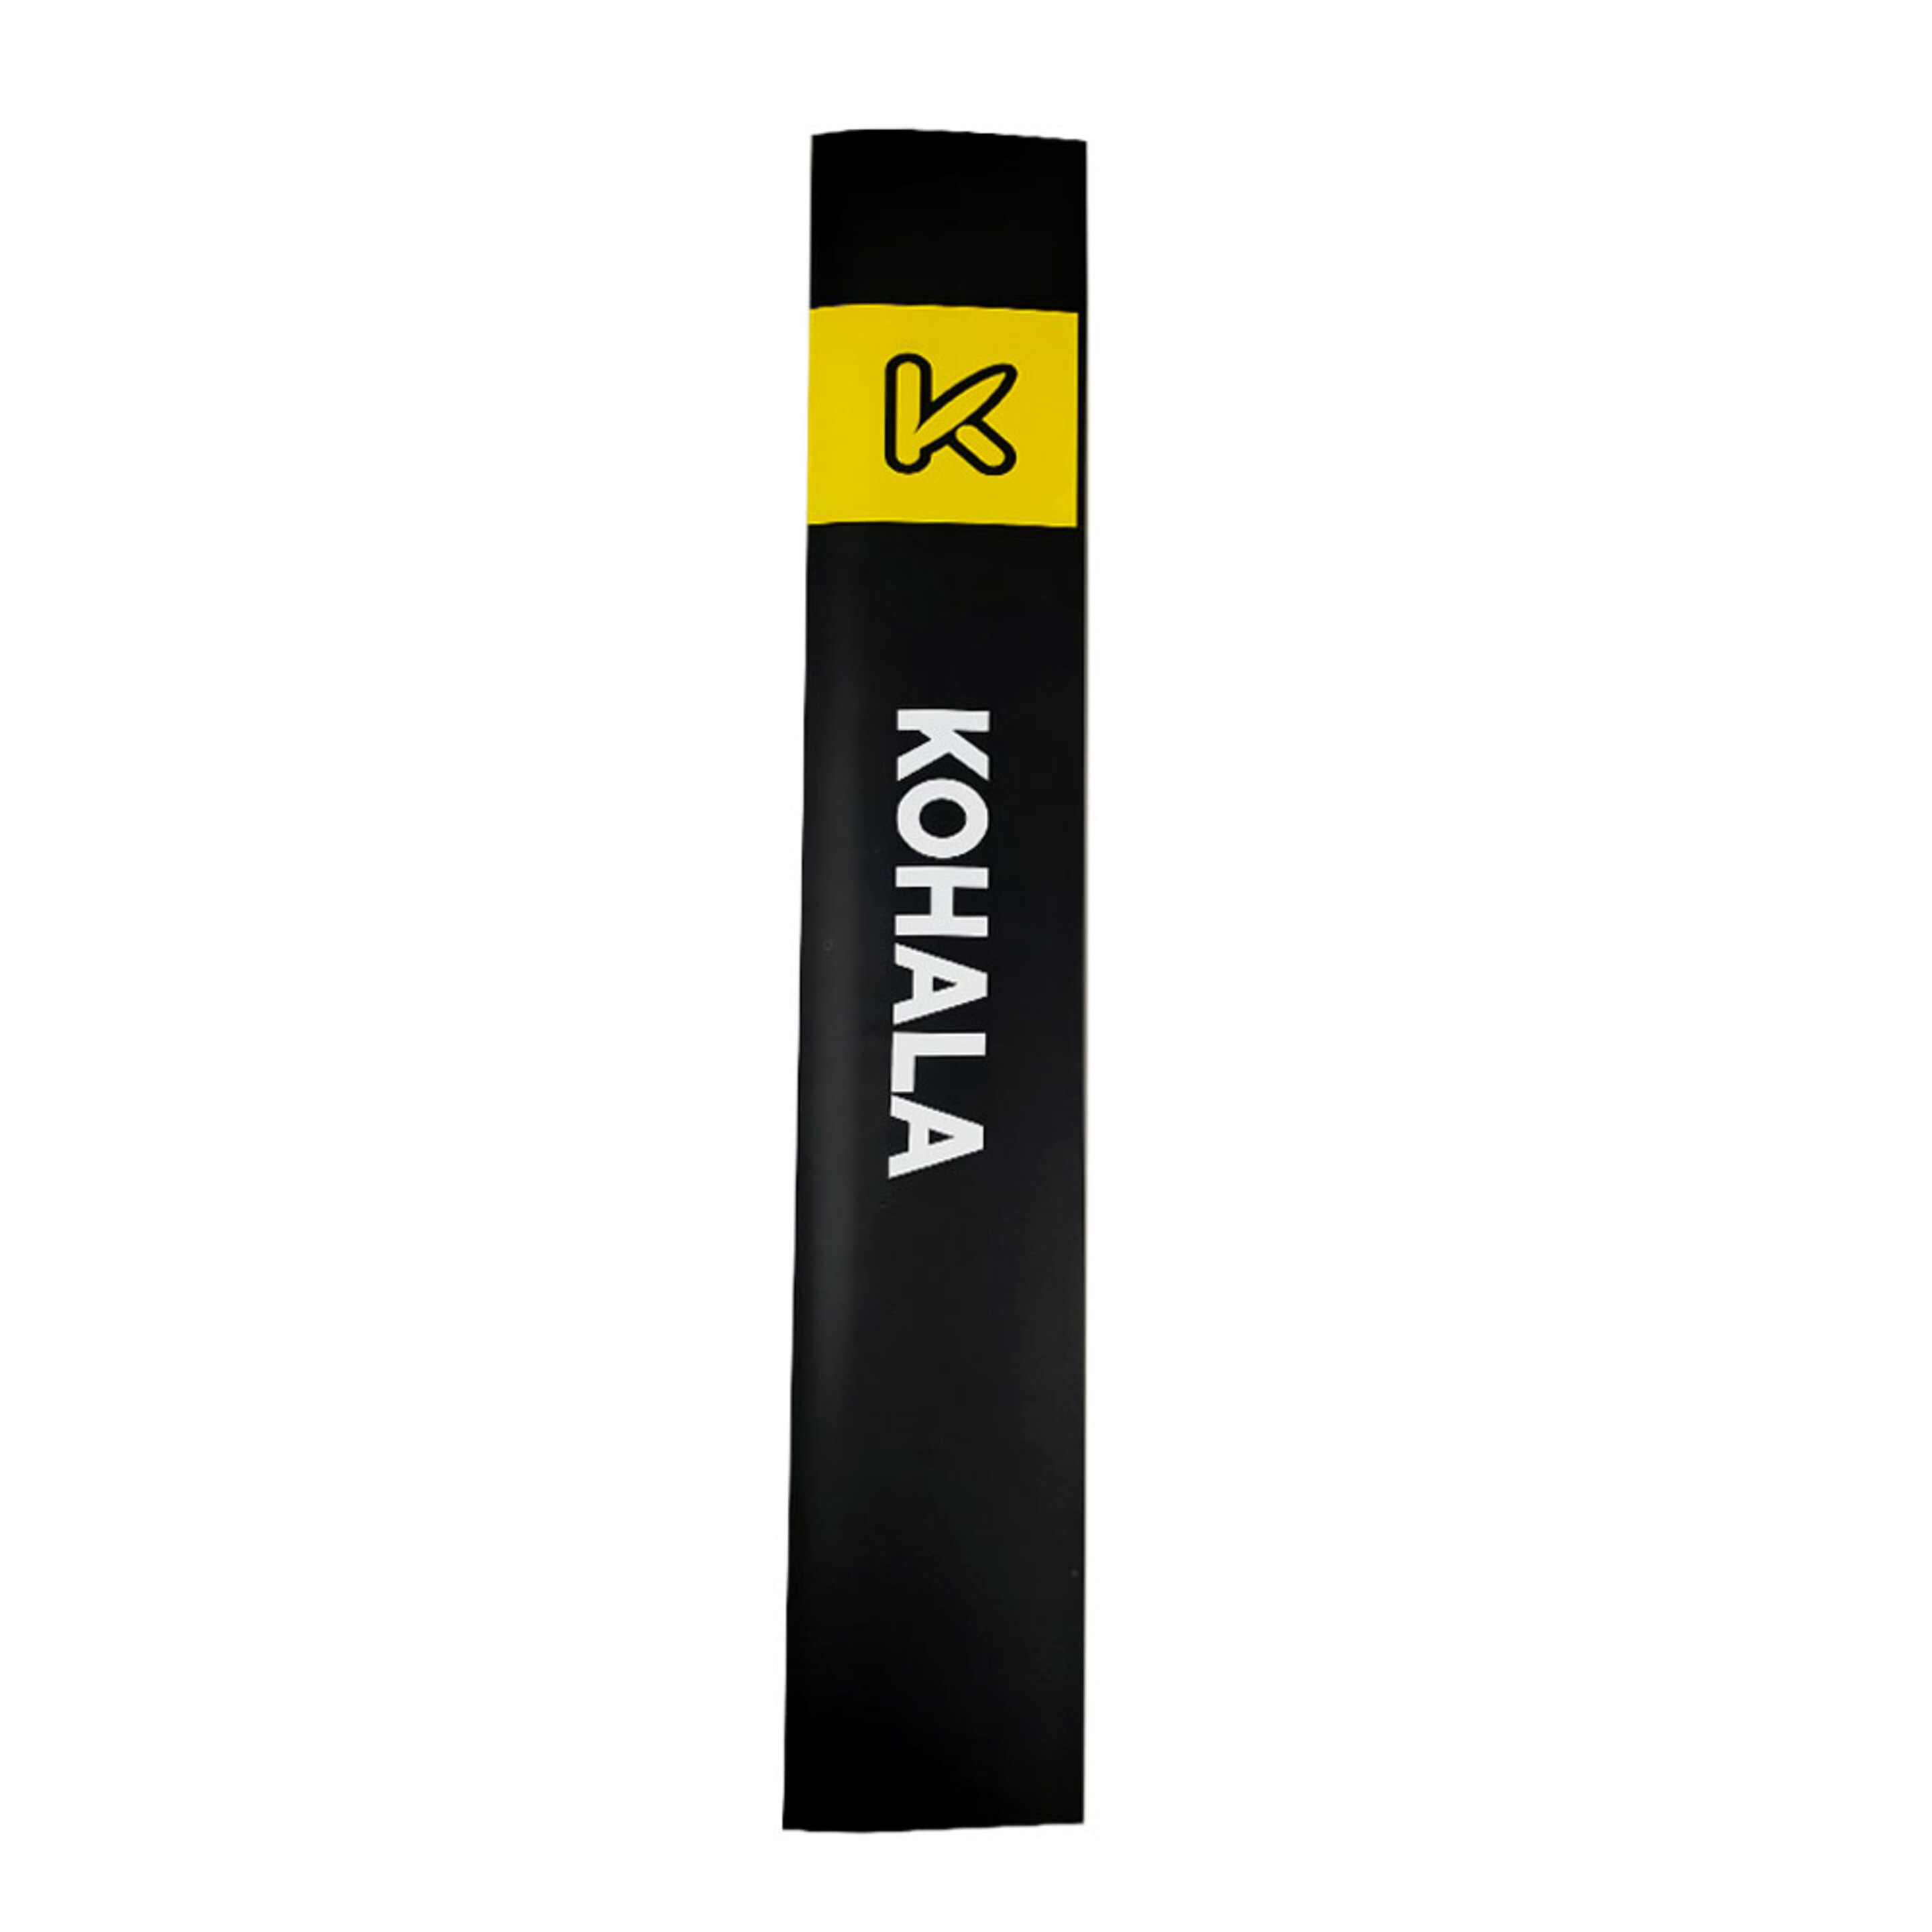 Mastro De Wing Foil Kohala 90cm - negro-amarillo - 